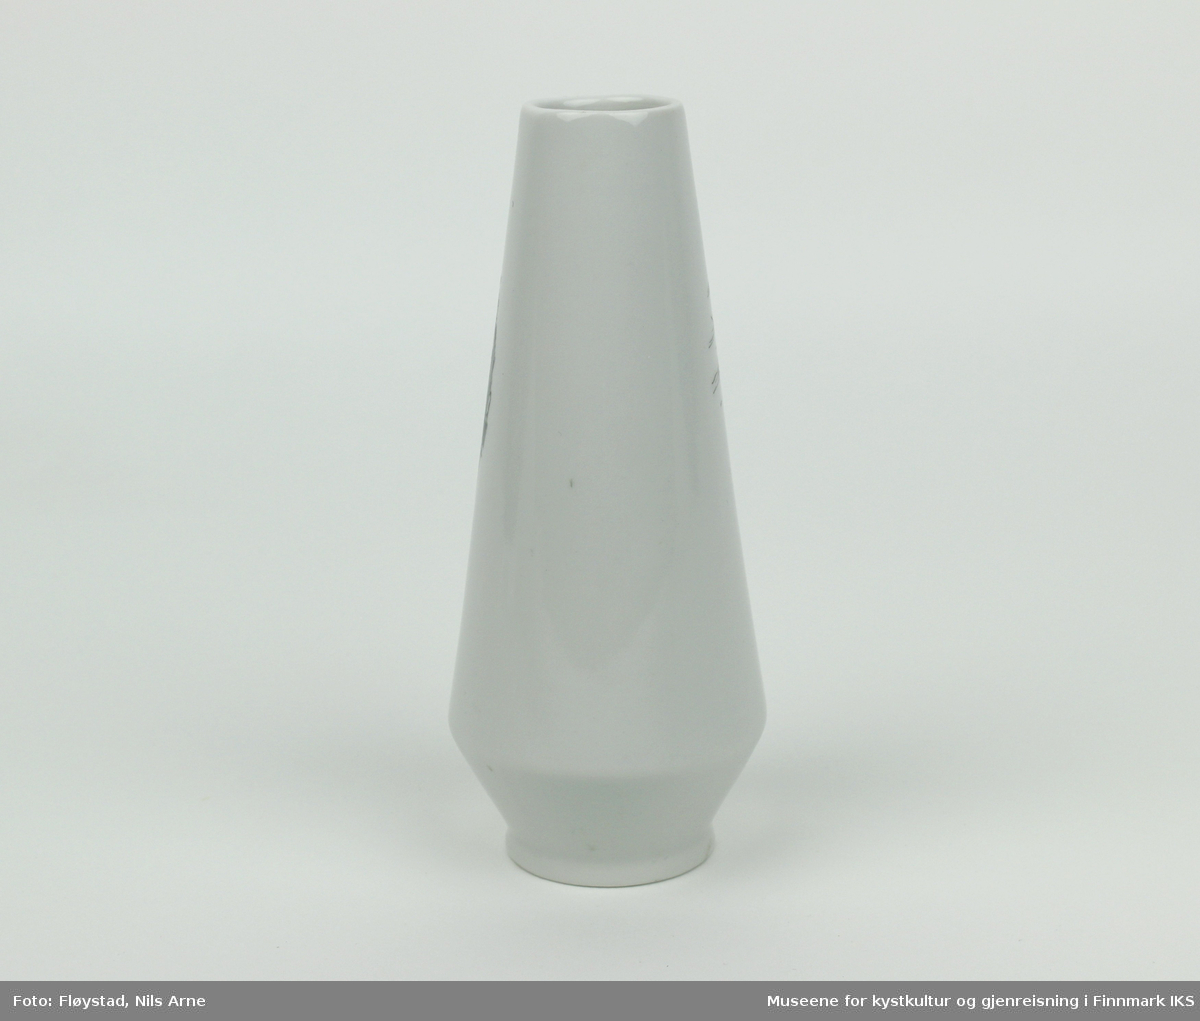 En balusterformet keramikkvase med en liten sirkulær munning og trykt dekor. Vasen er antakeligvis laget av bløtt porselen med hvit glasur. 
 
Dekoren er et sirkelformet trykt motiv av Nordkapplatået, med havet, sola og en lettskyet himmel i bakgrunnen. Nederst i motivet er det trykt "NORDKAPP" og de geografiske koordinatene "17°21''10", som antakeligvis kommer av en produksjonsfeil. De korrekte koordinatene er 71°10'21".